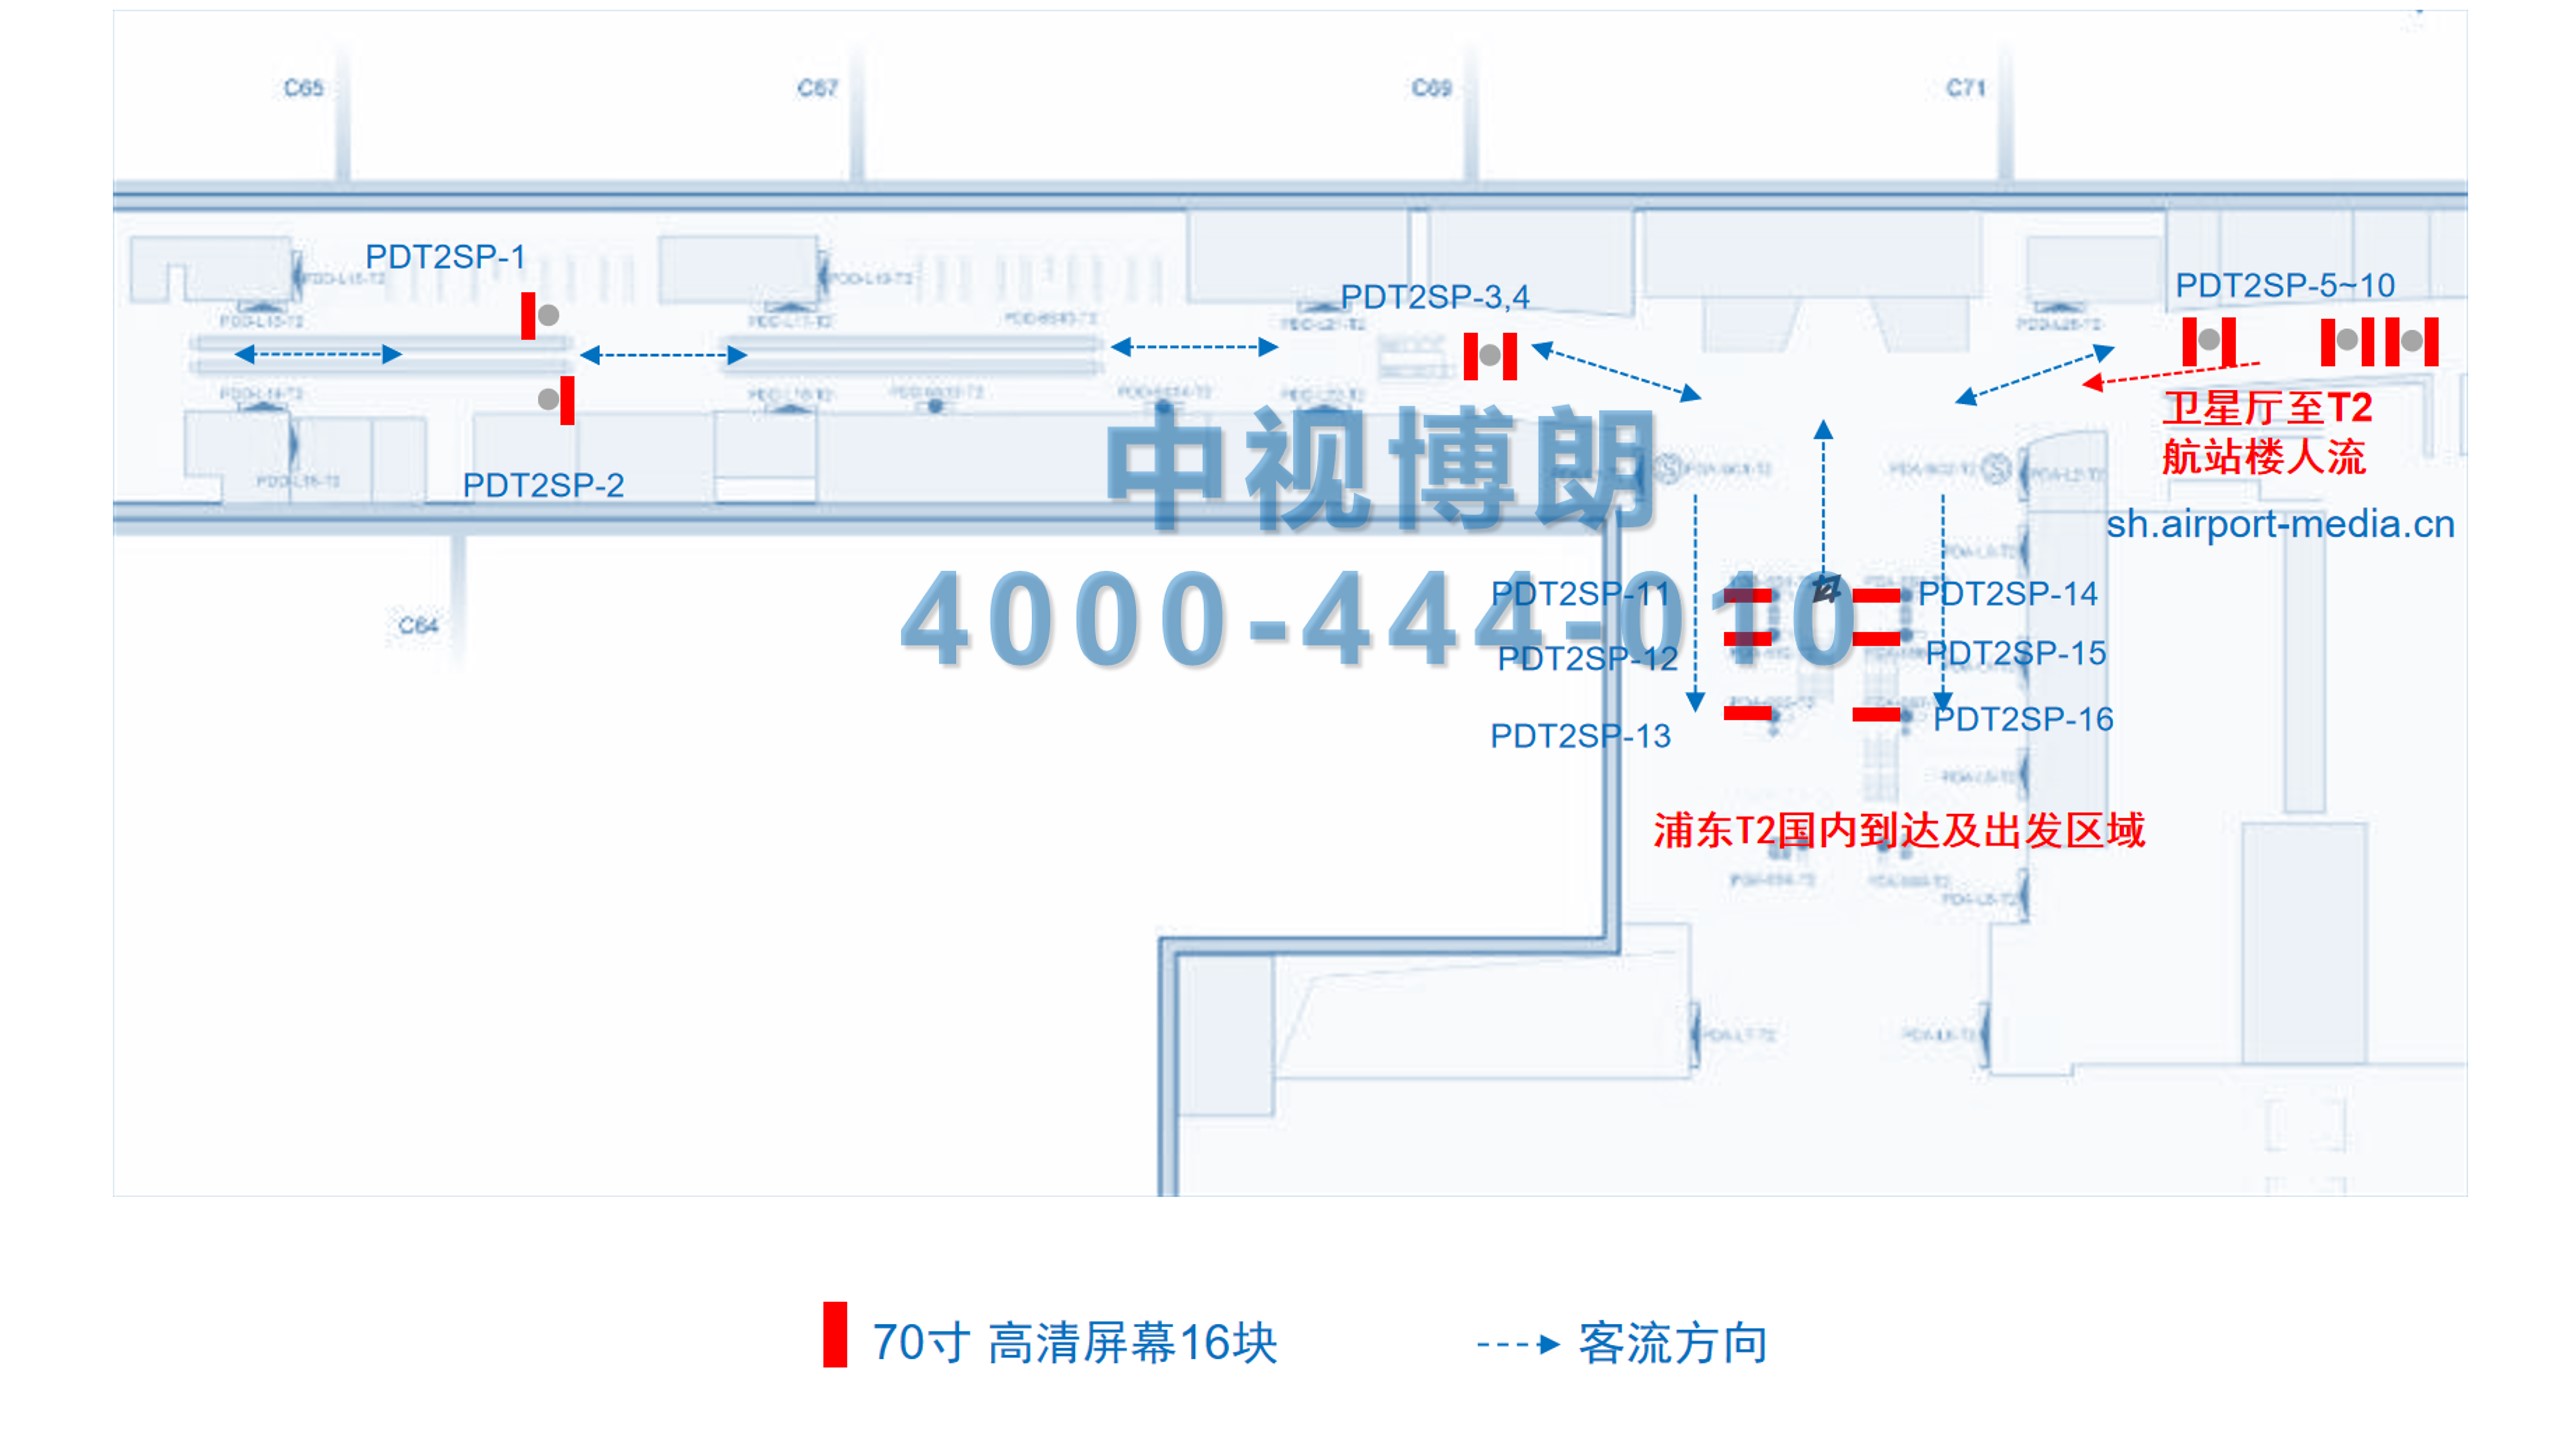 上海机场广告-浦东T2出发到达全覆盖刷屏位置图